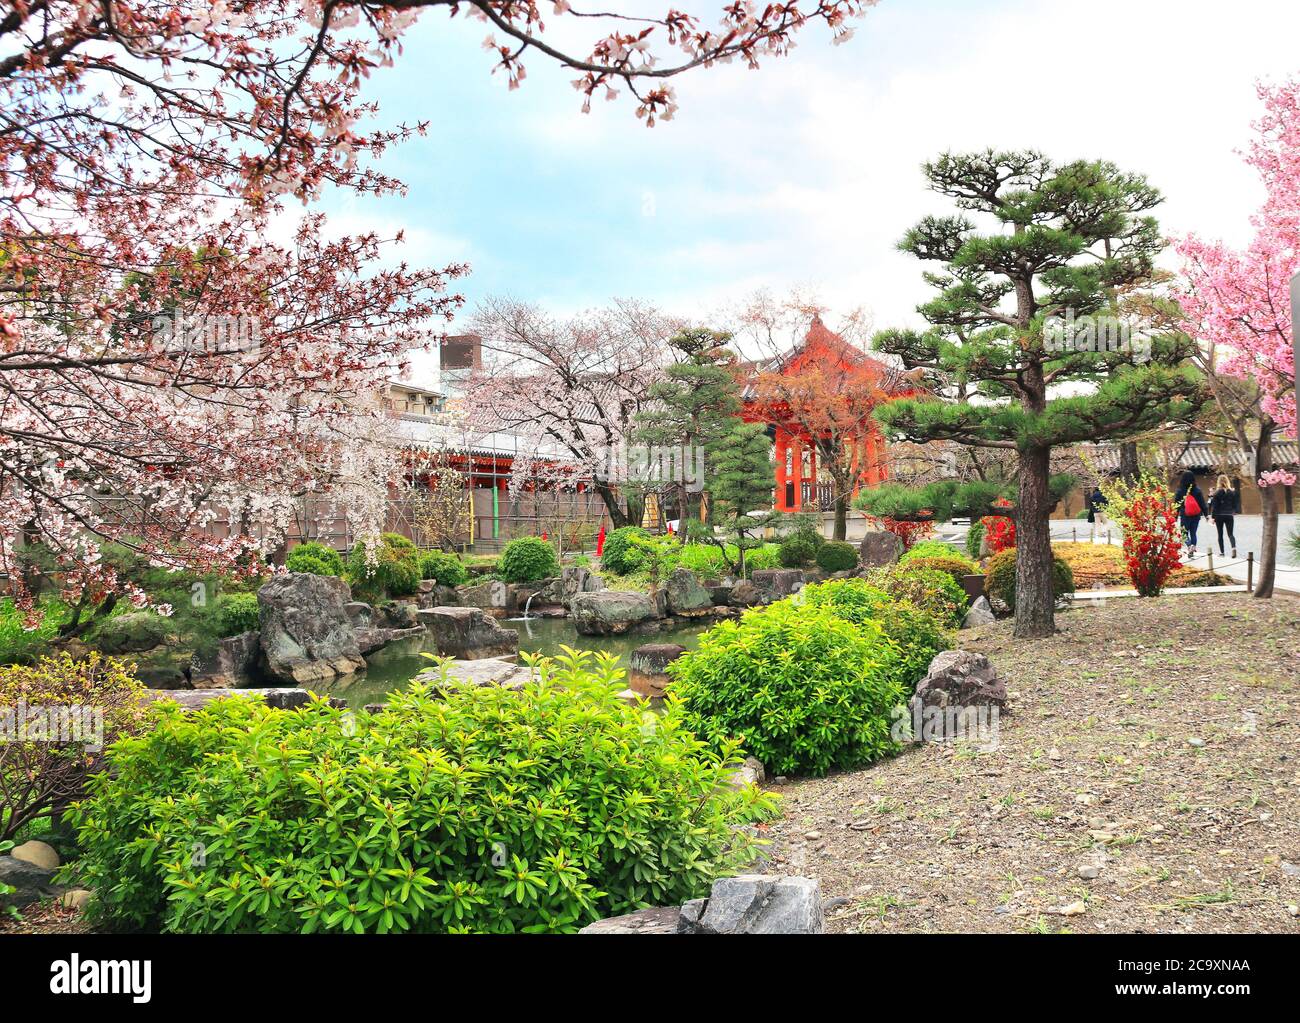 Saison des cerisiers en fleurs au Japon. Étang décoratif et arbres en fleurs de sakura dans le jardin près de la salle principale du temple bouddhiste Sanjusangendo (Rengeo-in) Banque D'Images